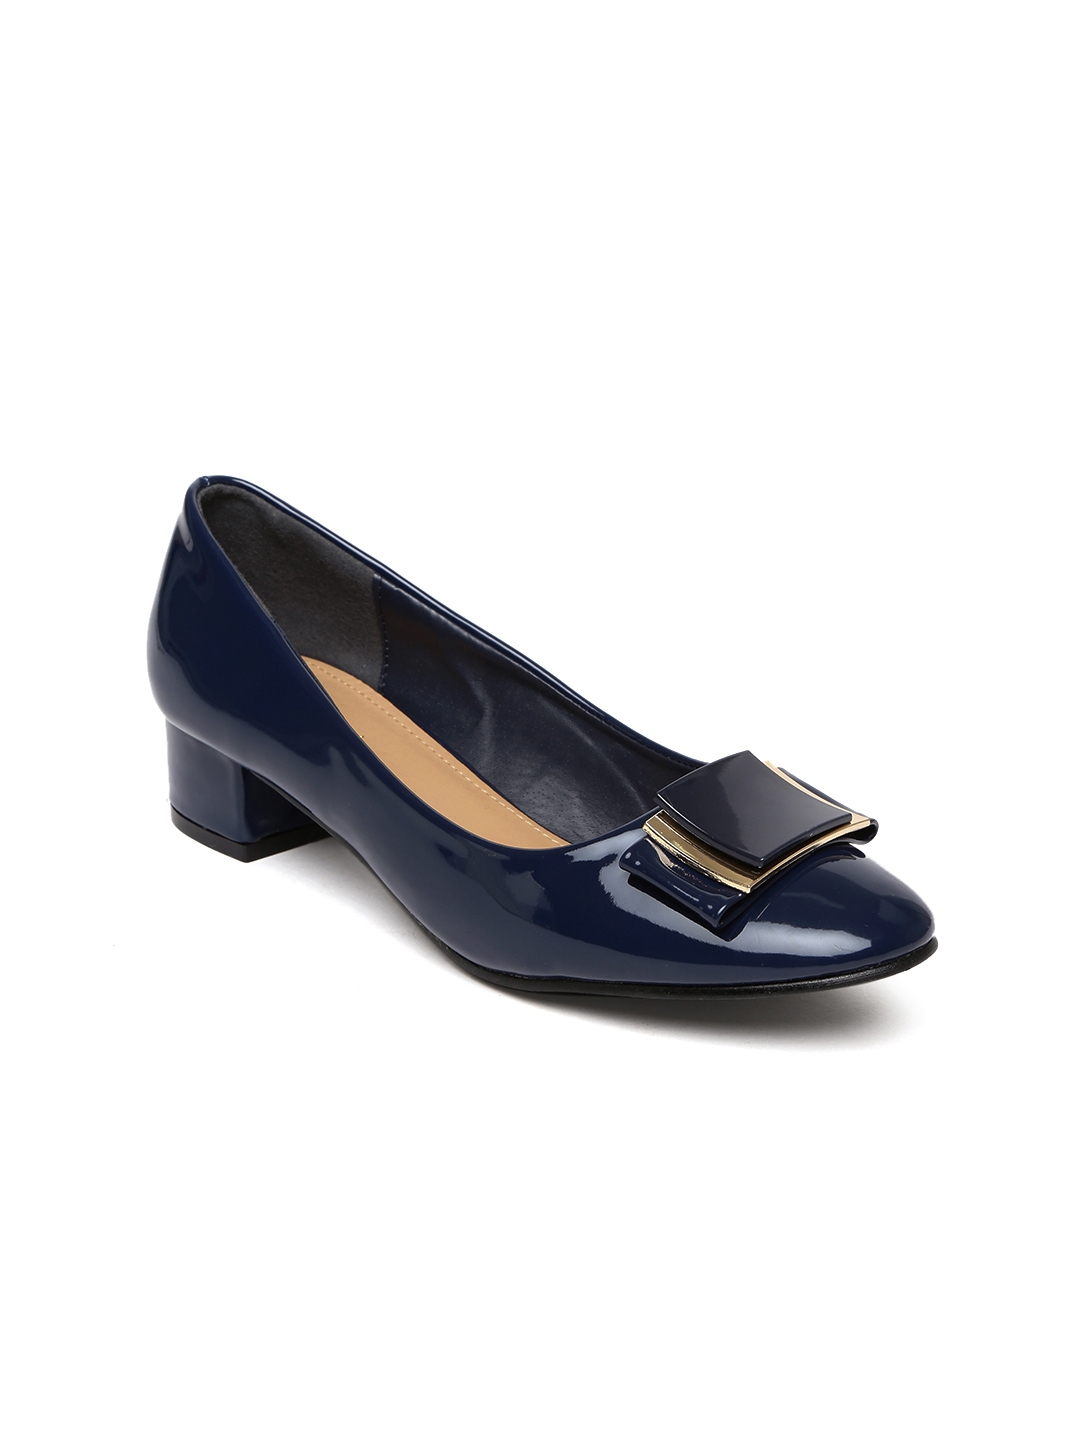 Buy Tao Paris Women Navy Blue Pumps - Heels for Women 1795950 | Myntra